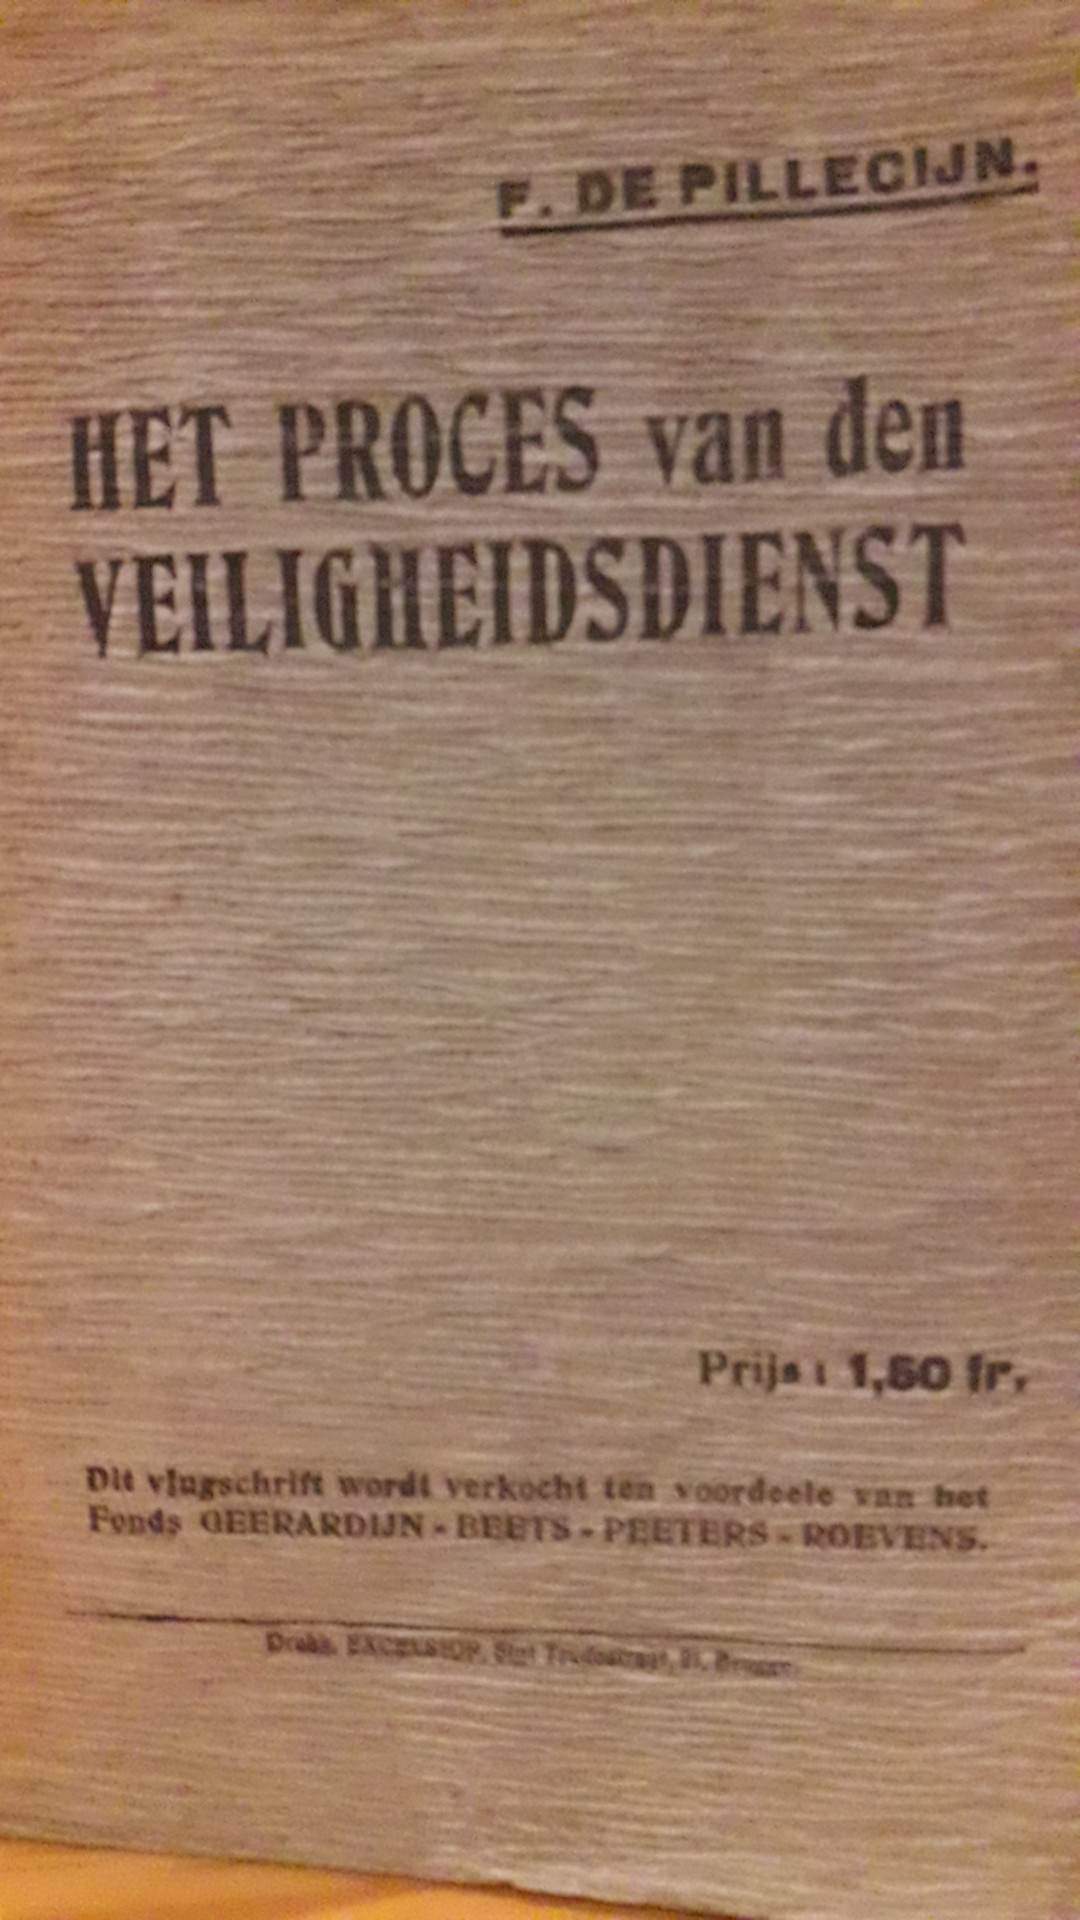 Het proces van den veiligheidsdienst door Filip De Pilleceyn - IJzerbedevaart / 1920